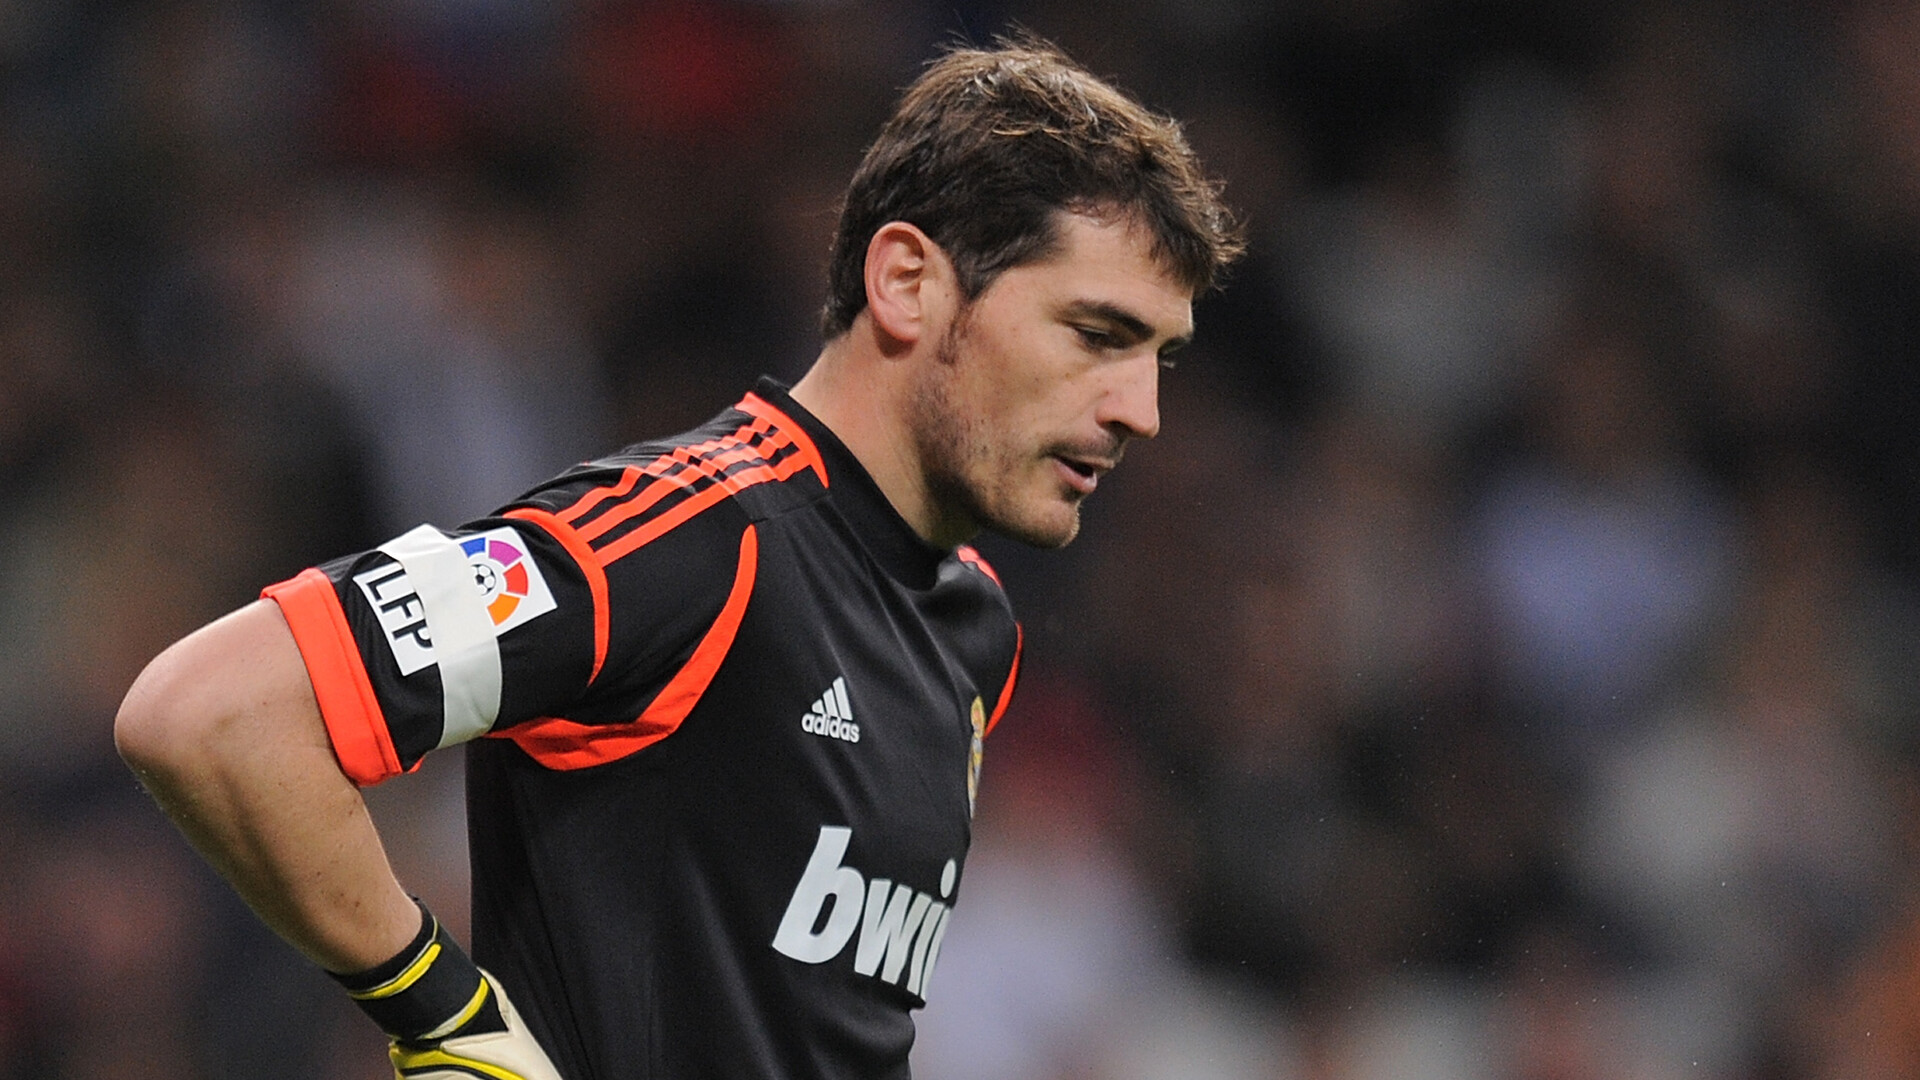 Iker Casillas: World Cup-winning Spanish goalkeeper, A Goodwill Ambassador, UNDP, 24 January 2011. 1920x1080 Full HD Background.